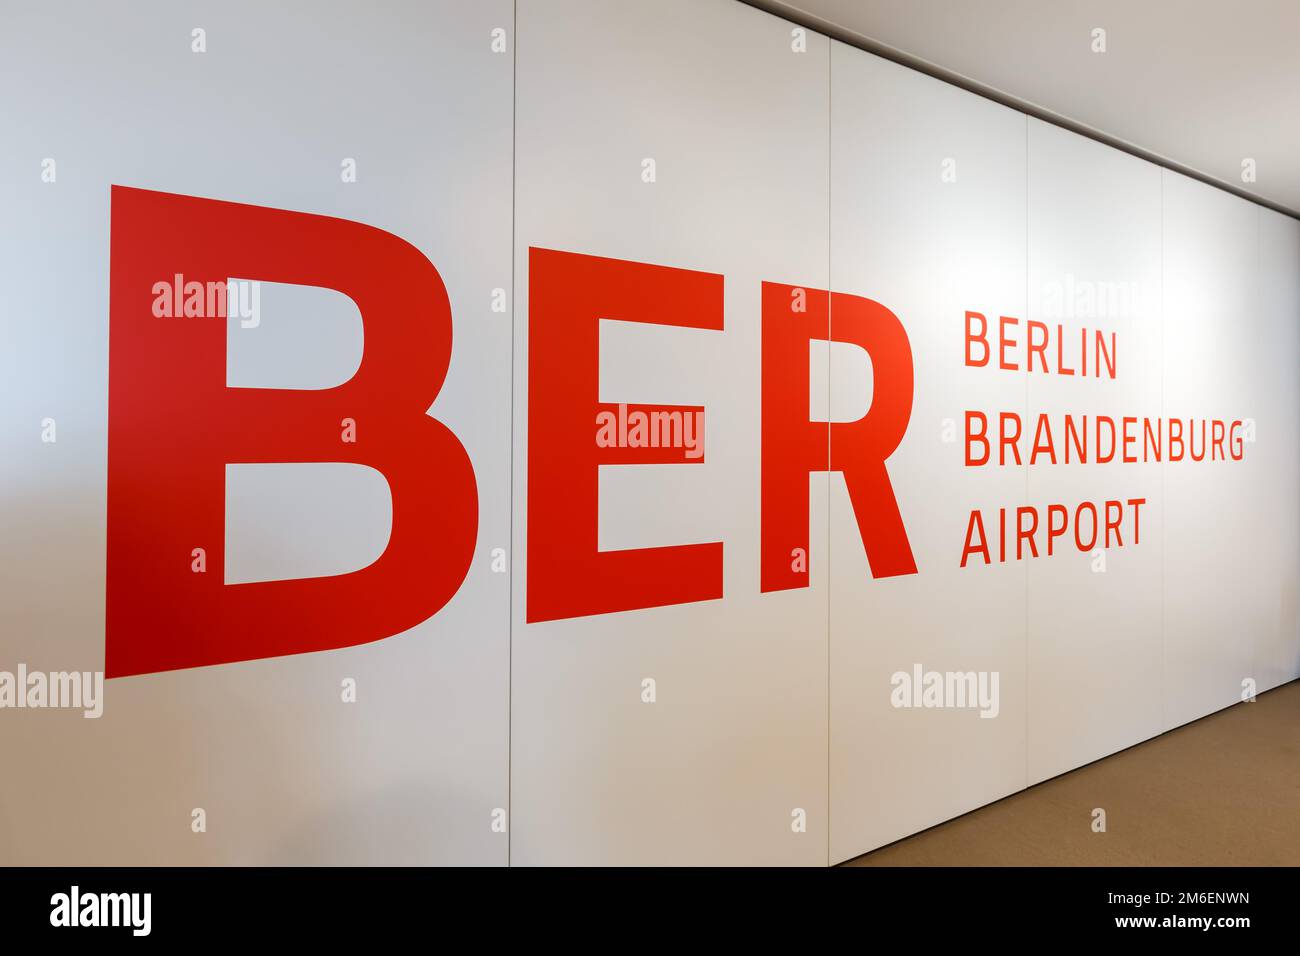 Flughafen Berlin Brandenburg BER Willy Brandt Airport Stock Photo